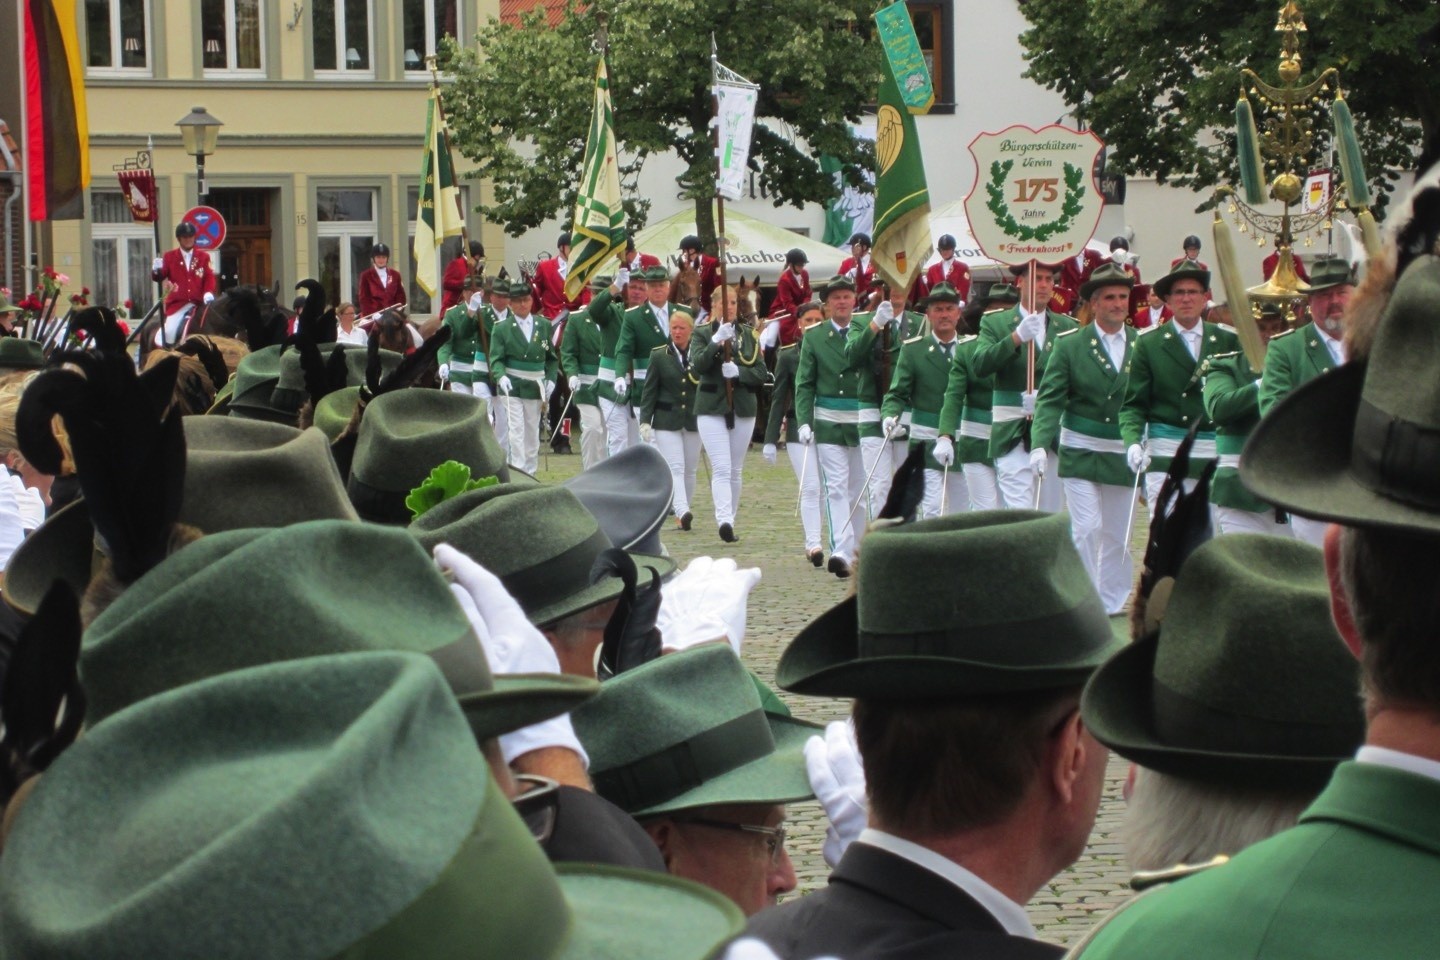 Bürgerschützenverein Freckenhorst,Freckenhorst,Warendorf,Schützenfest,Tradition,